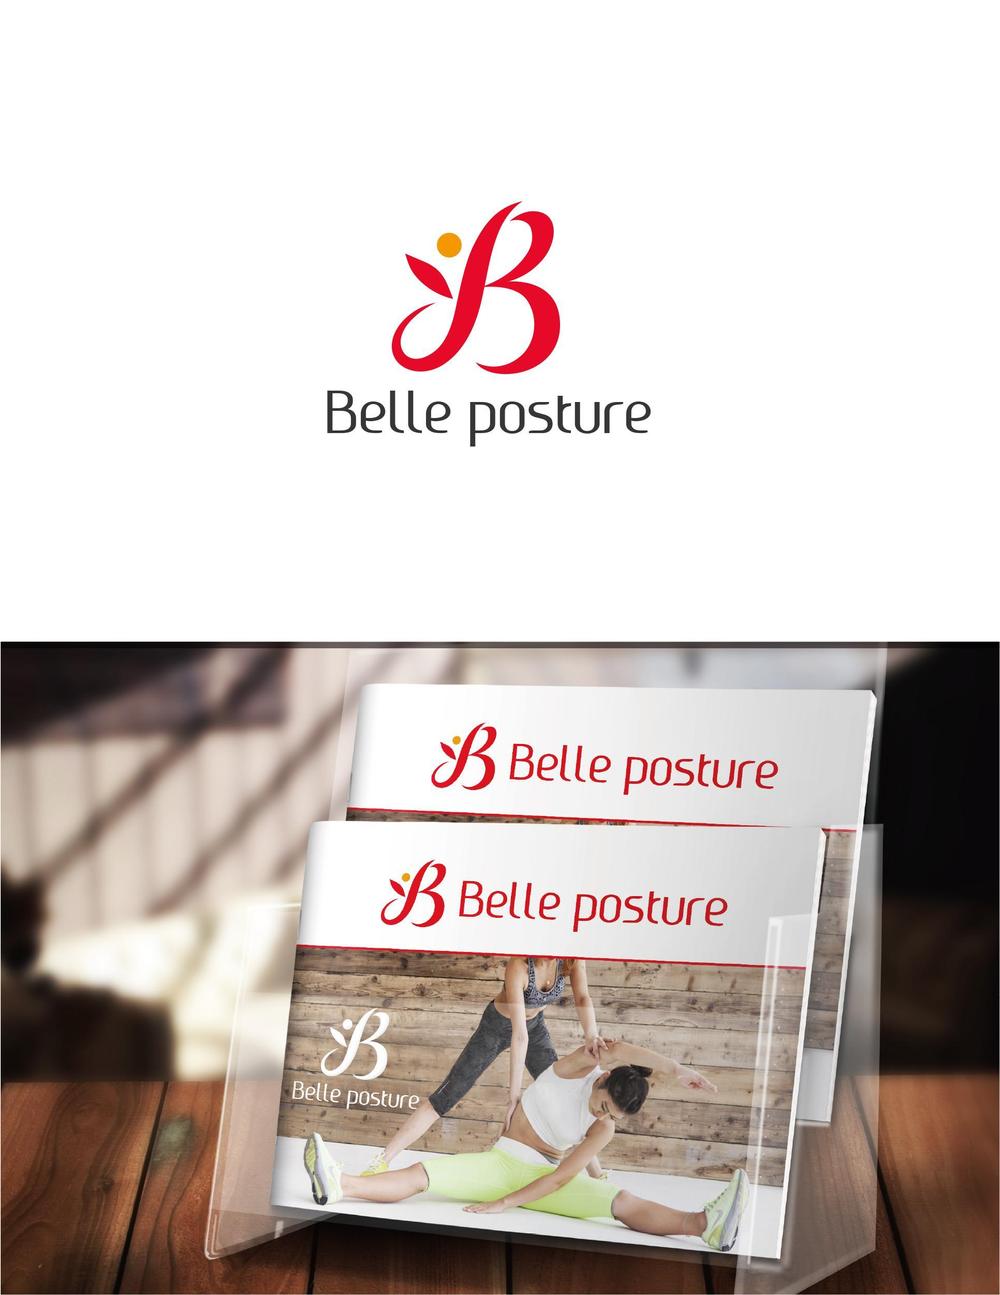 Belle posture_1.jpg